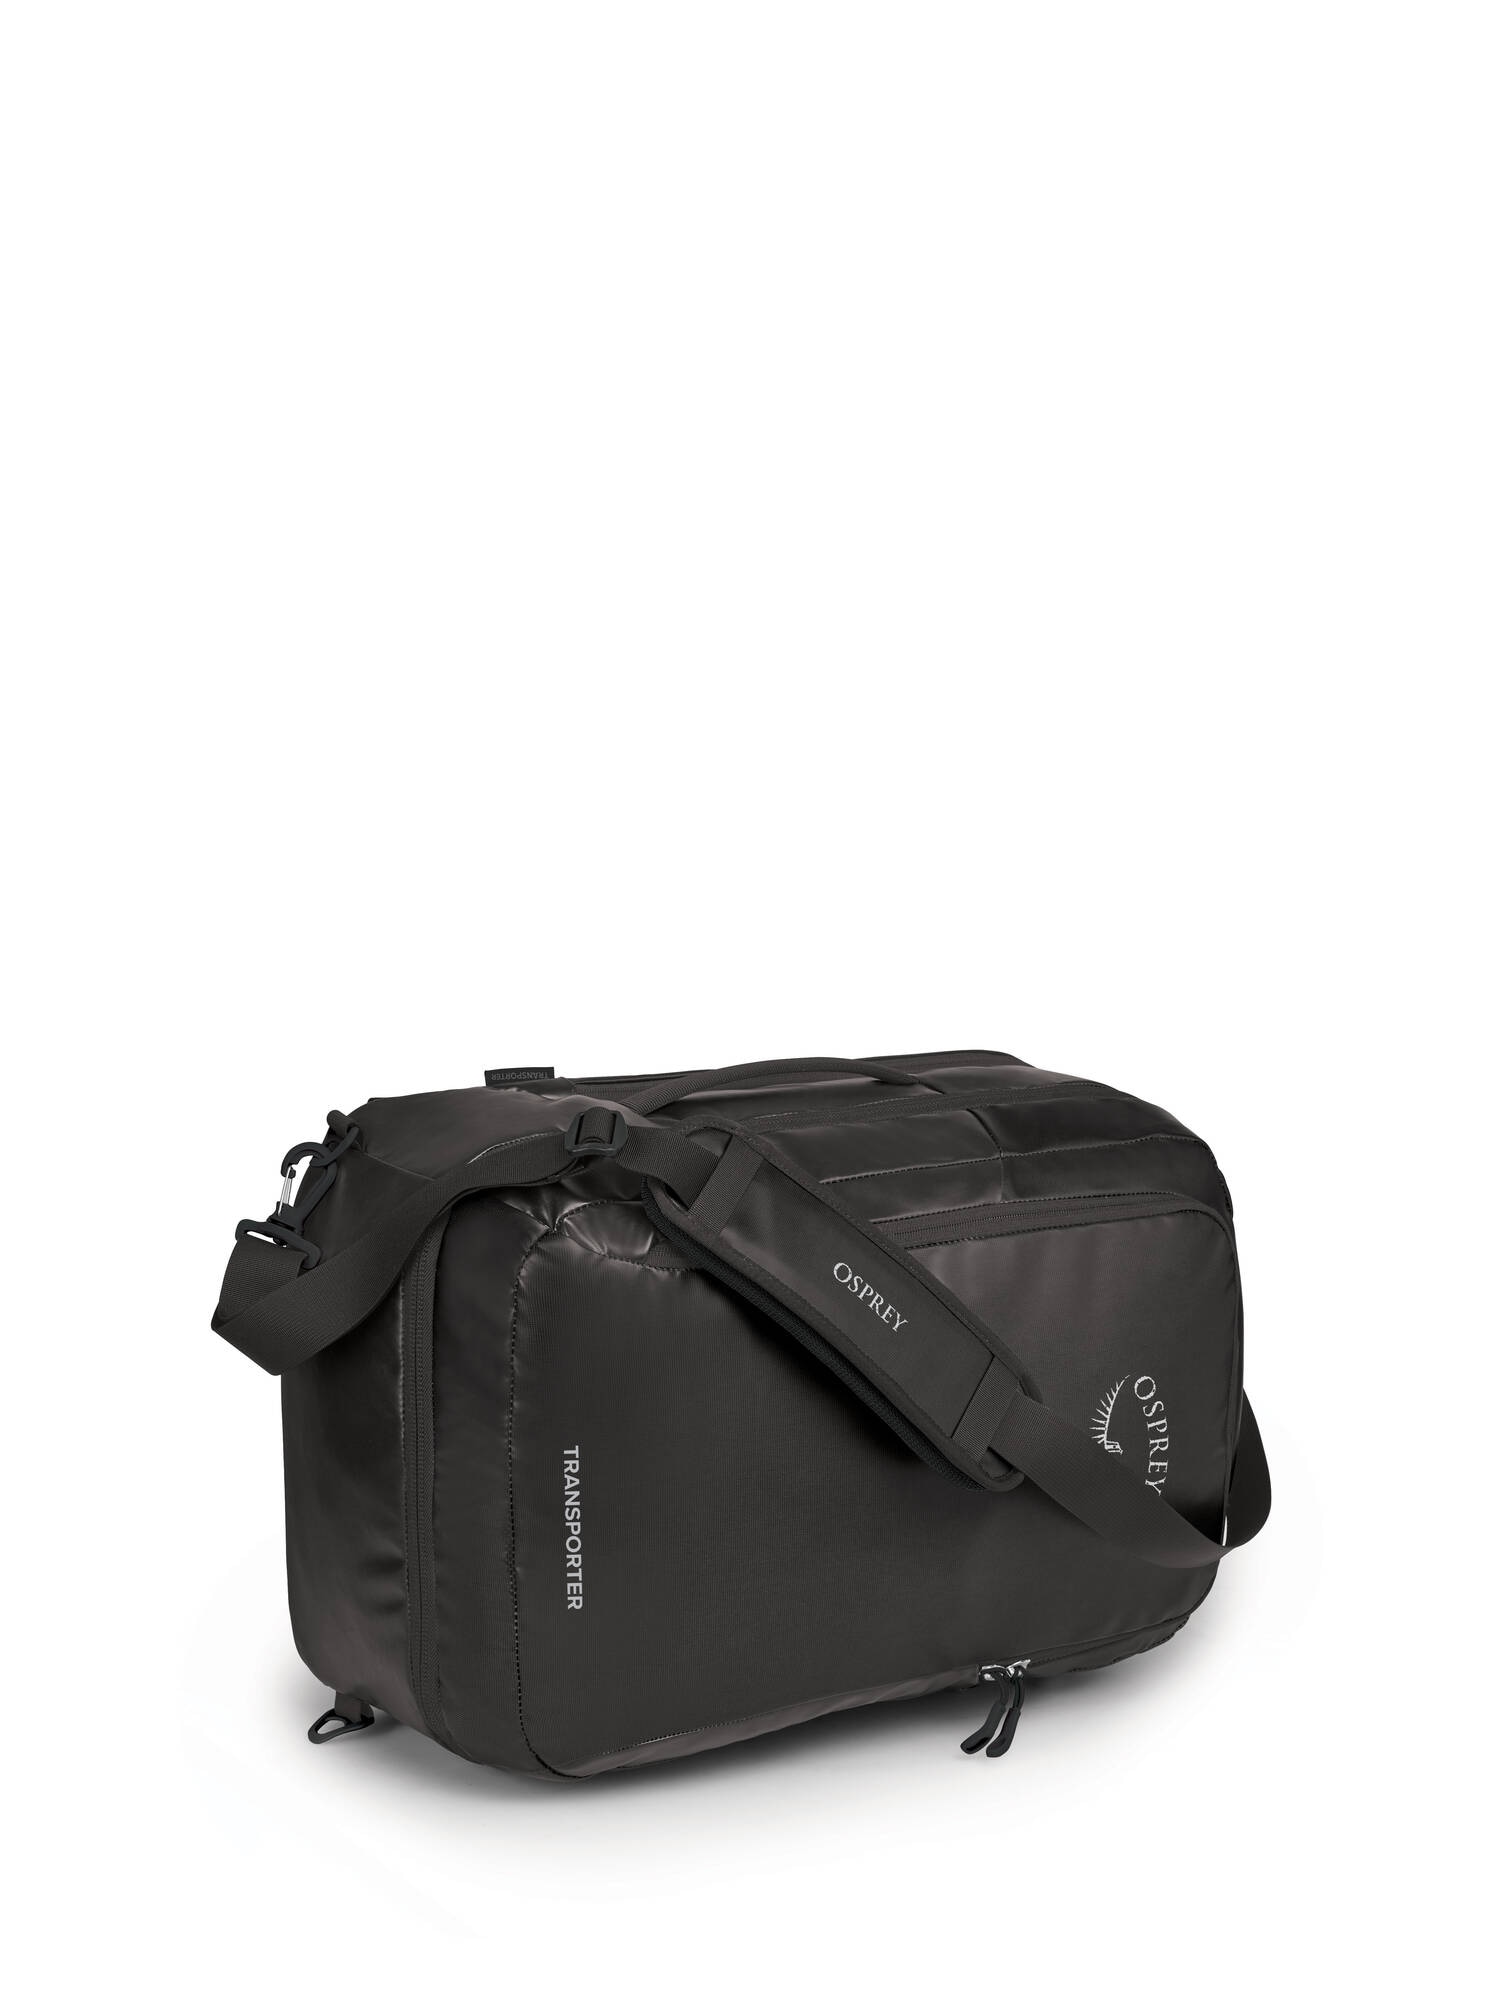 Osprey Transporter Carry-On Bag 44L